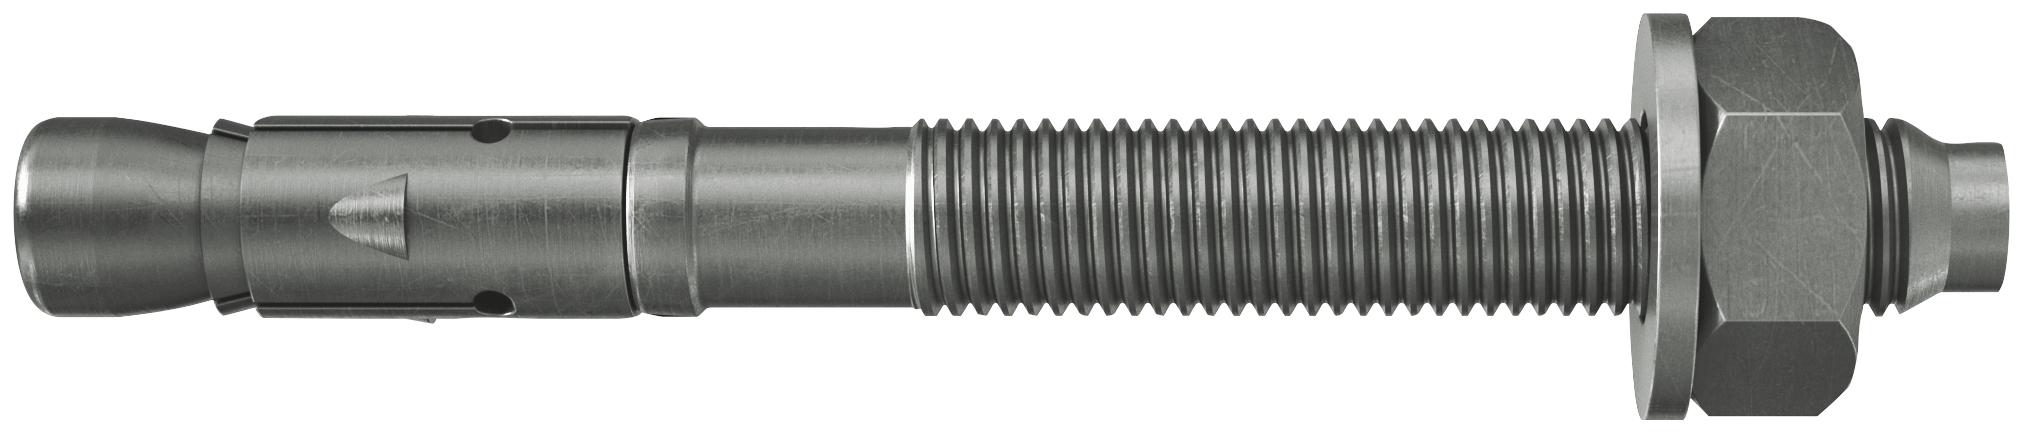 fischer Tassello acciaio FAZ II 24/60 A4 (4 Pz.) L'ancorante ad espansione ad alte prestazioni per carichi statici su calcestruzzo fessurato e per applicazioni sismiche. Versione in acciaio inossidabile con classe di resistenza alla corrosione CRC III..